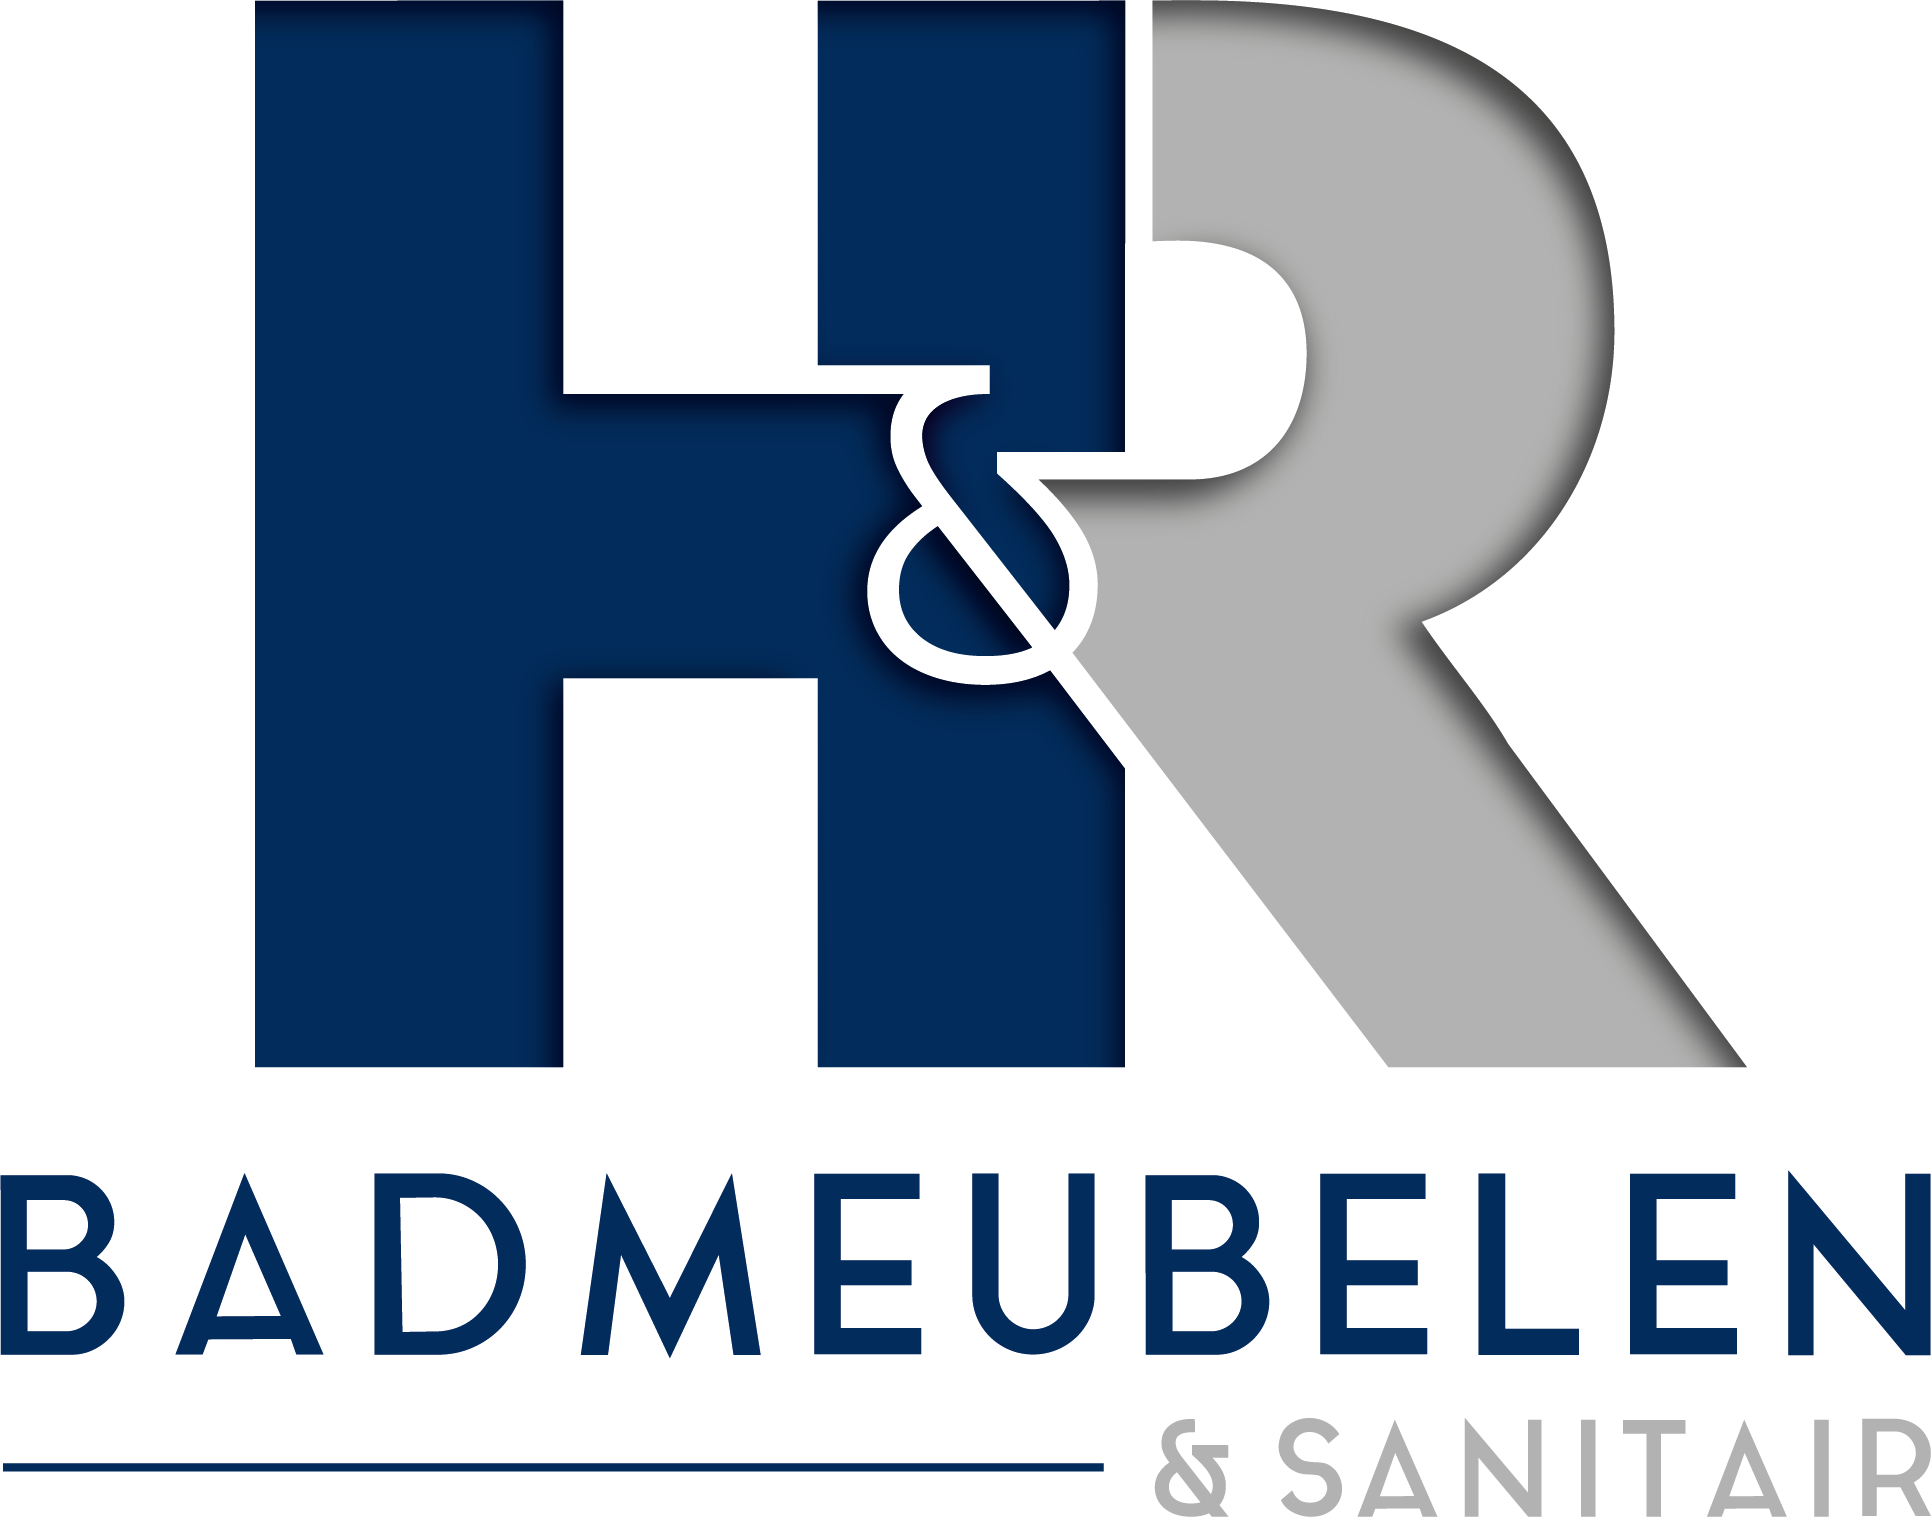 H&R Badmeubelen & Sanitair